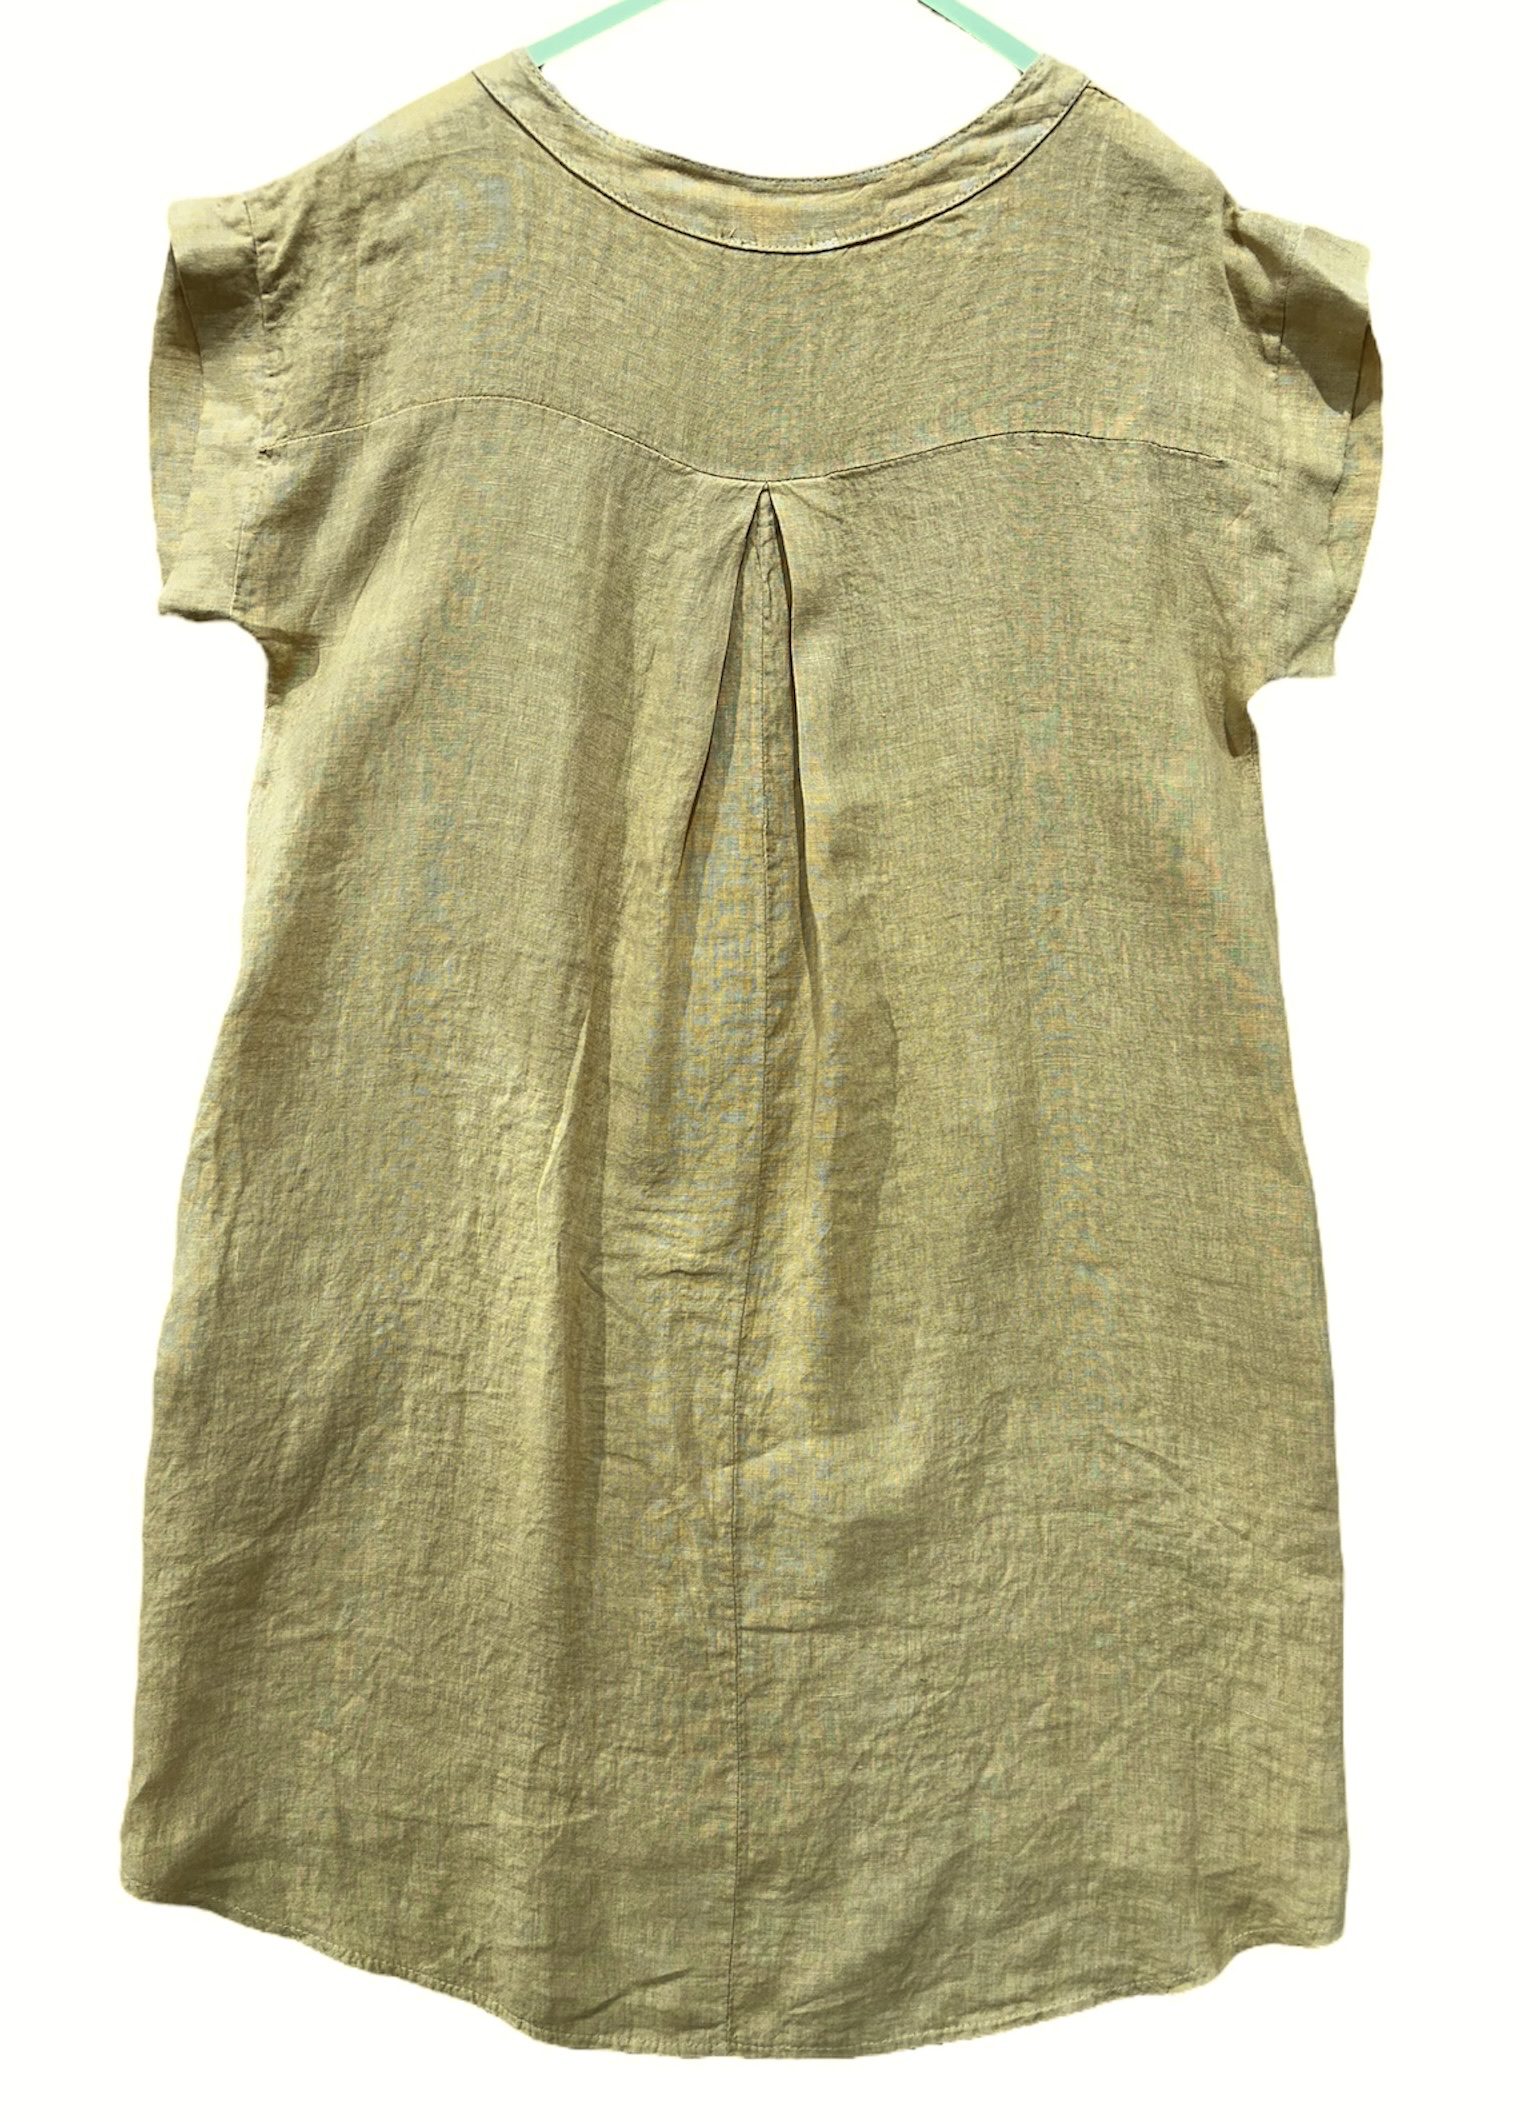 Luchtige linnen jurk- kleur CAMEL - korte raglan mouwen - zijzakken en knoppen - maat  42/44